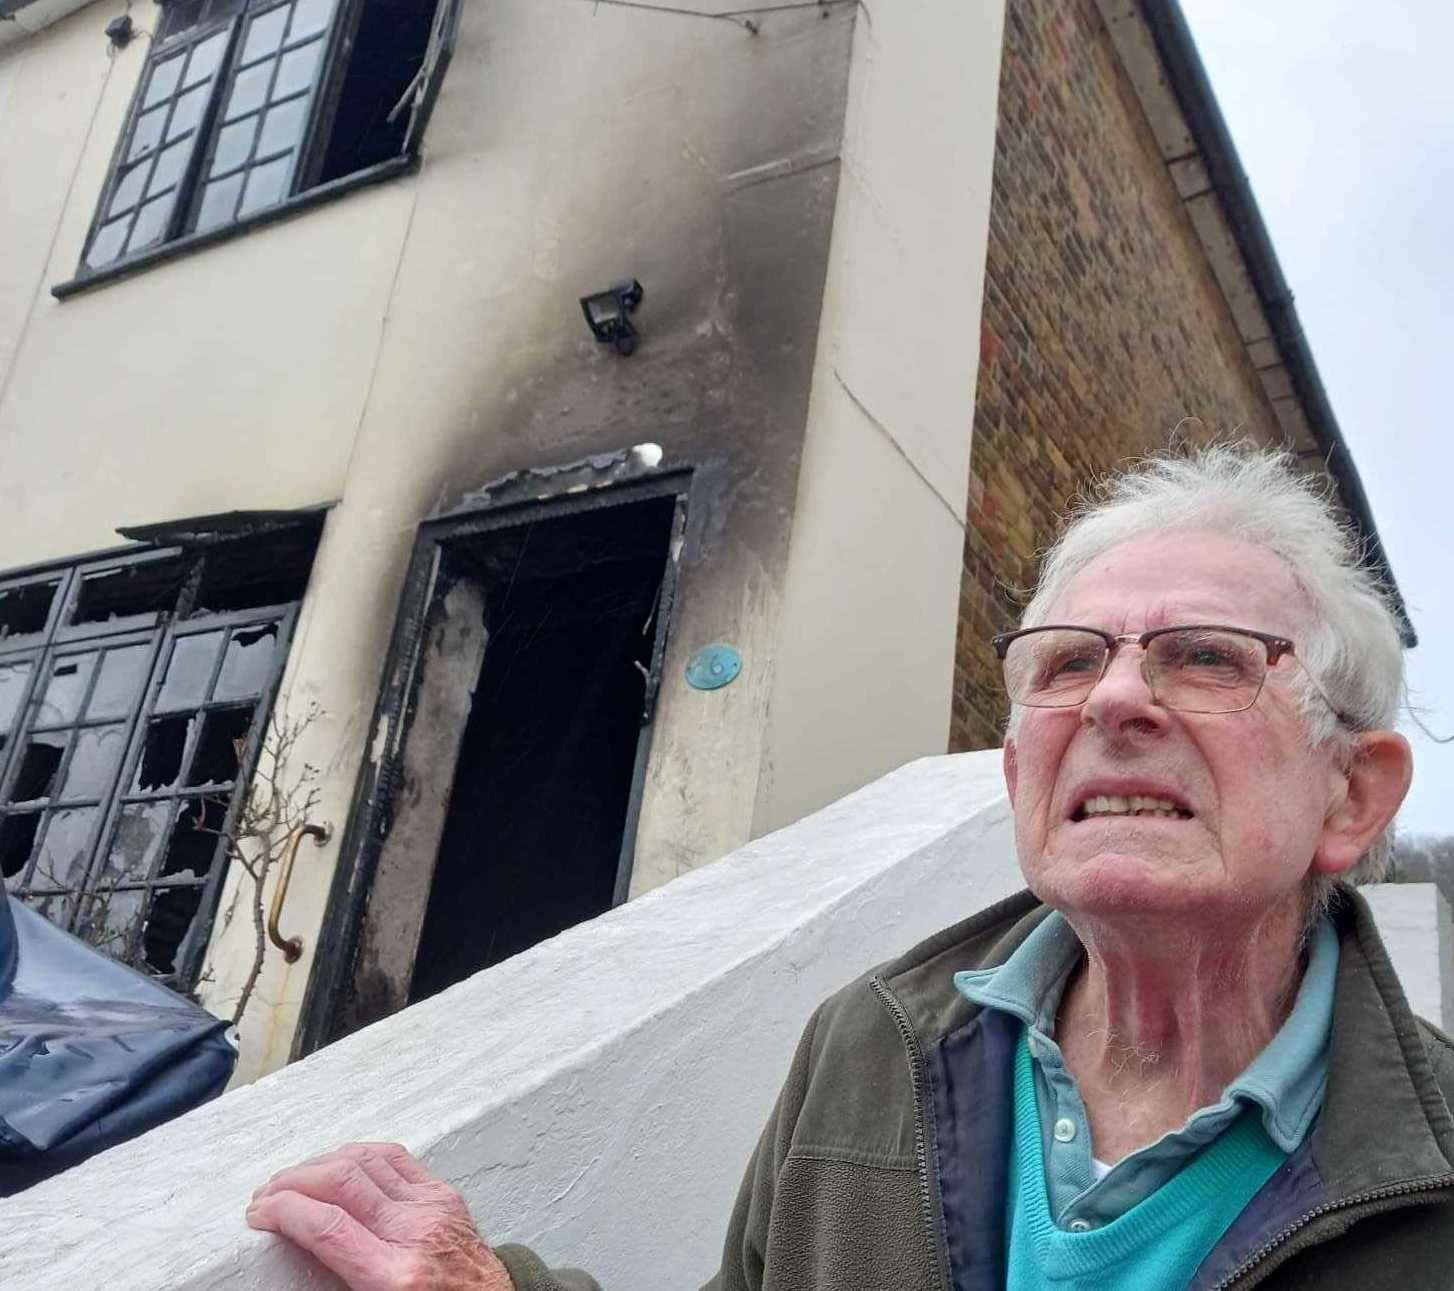 John Pratt, 86, from Sandgate, saved his neighbour's life. Photo: Annette Pratt